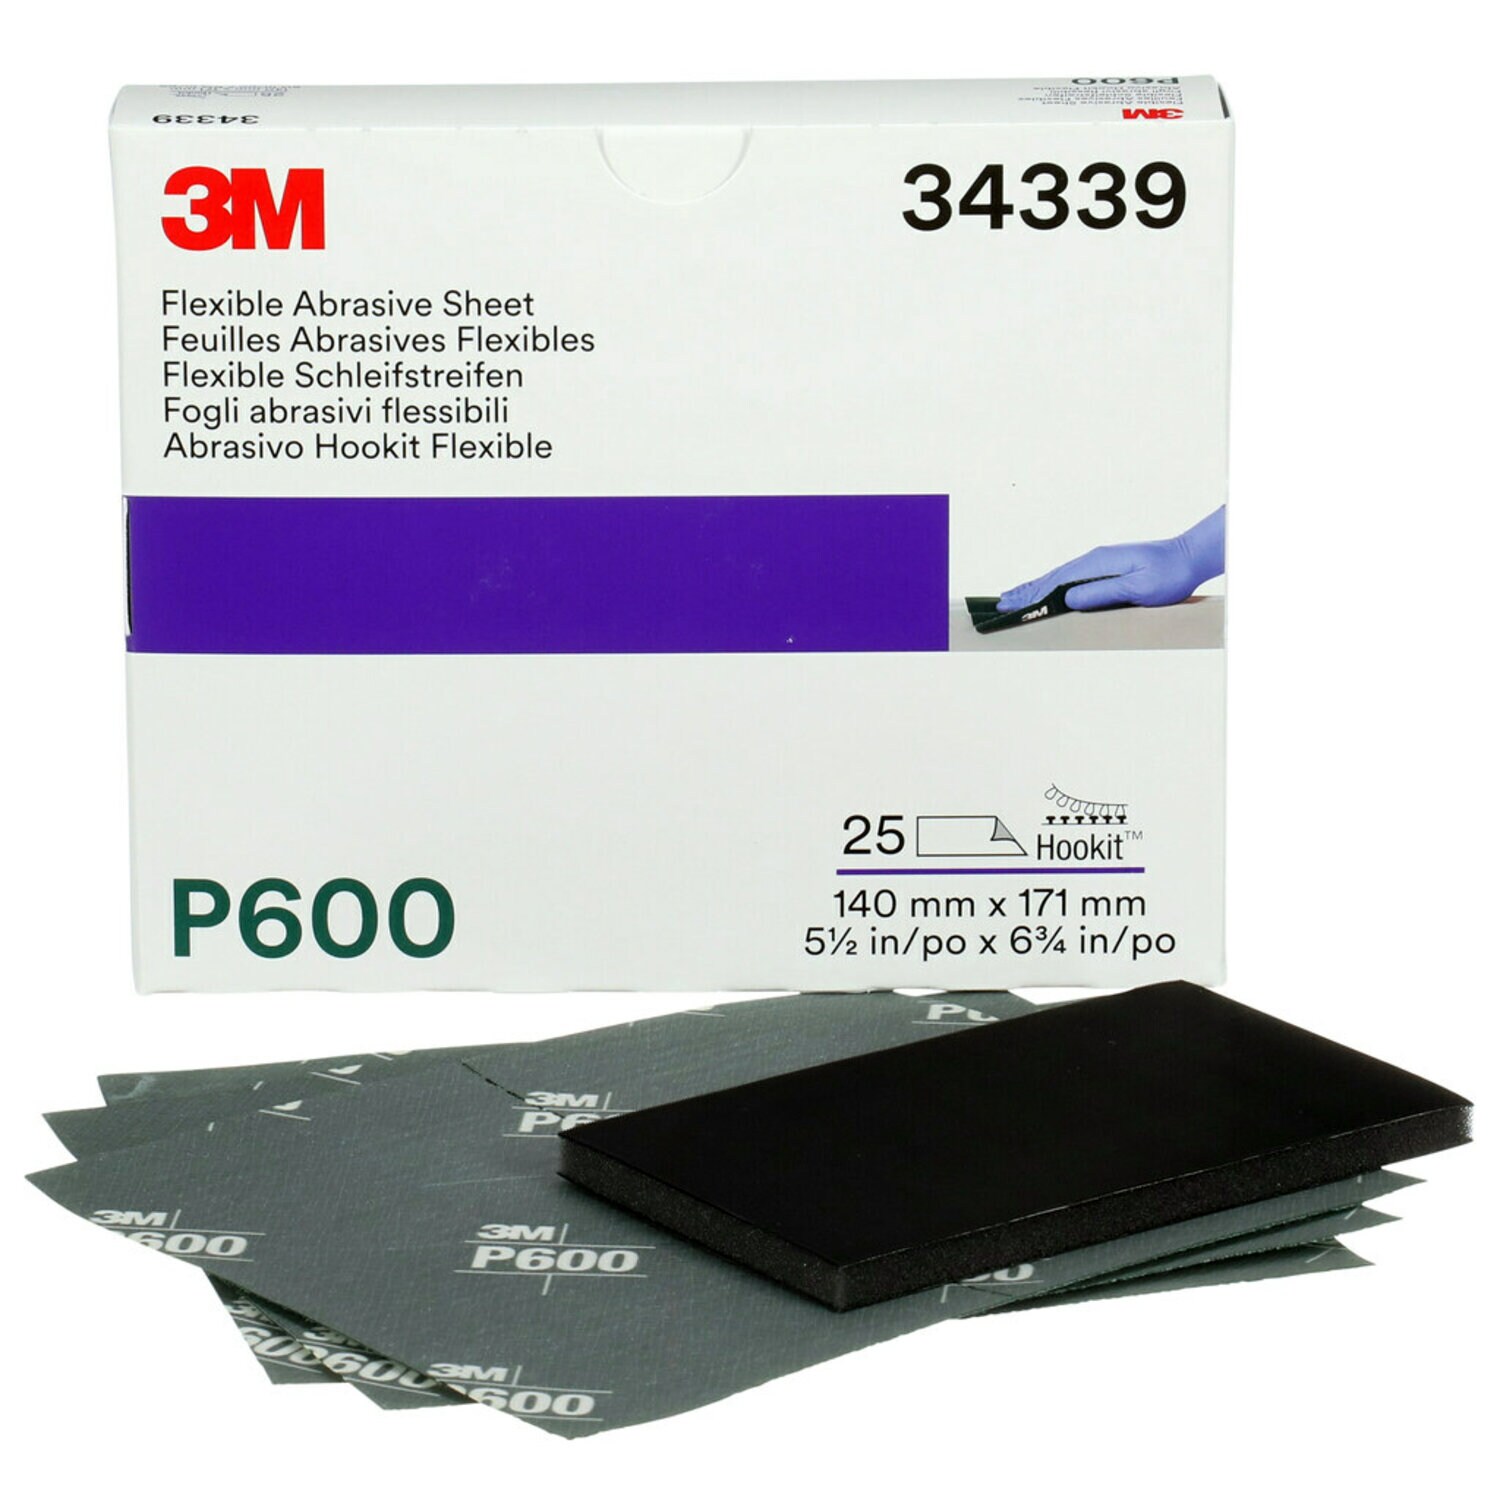 7100010566 - 3M Hookit Flexible Abrasive Sheet, 34339, P600, 5.5 in x 6.8 in, 25
sheets per carton, 5 cartons per case